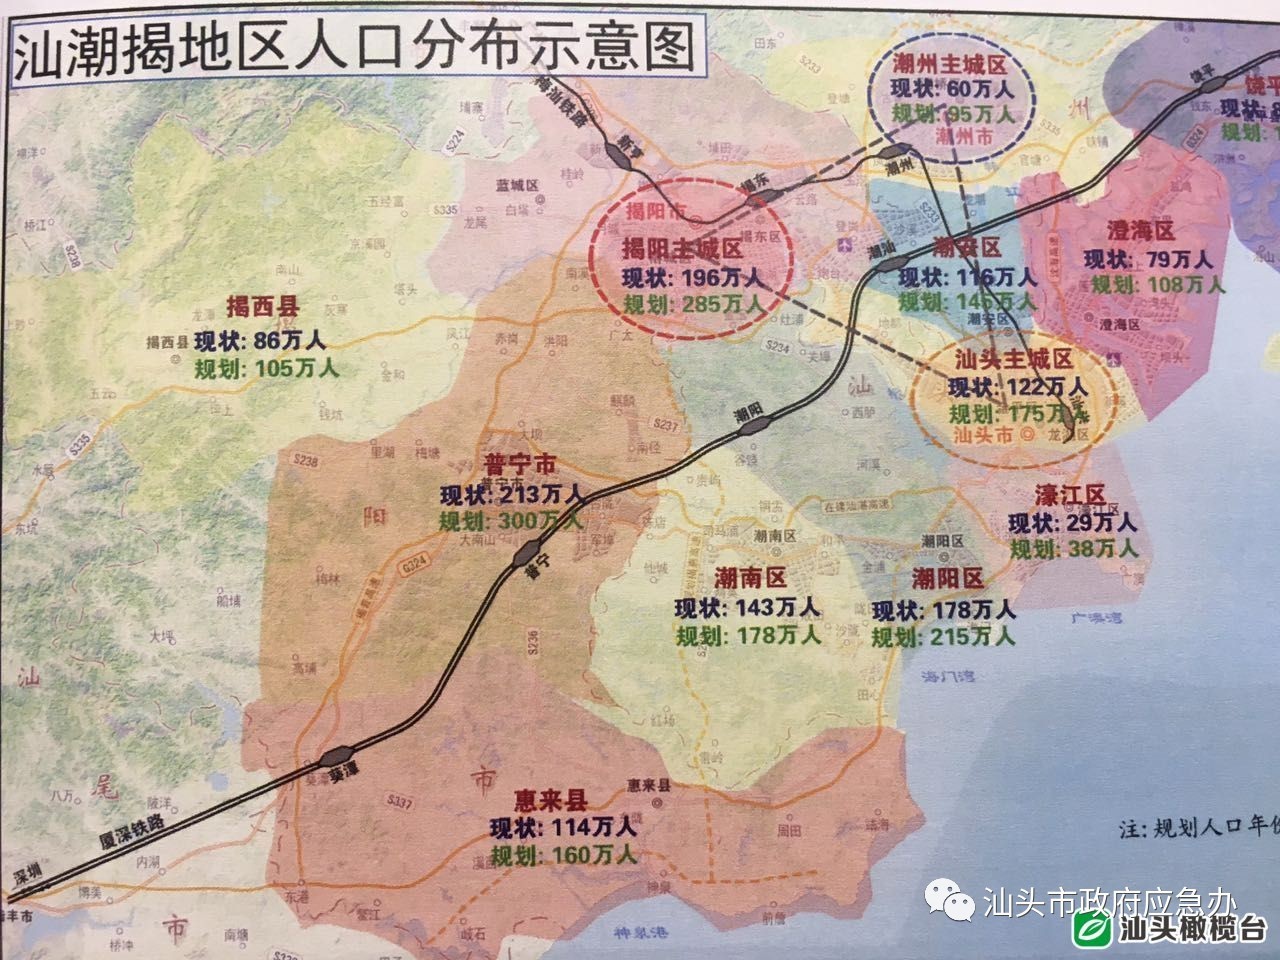 方案推荐三年半施工期,力争实现广州-汕尾铁路和汕尾至汕头铁路同步开图片